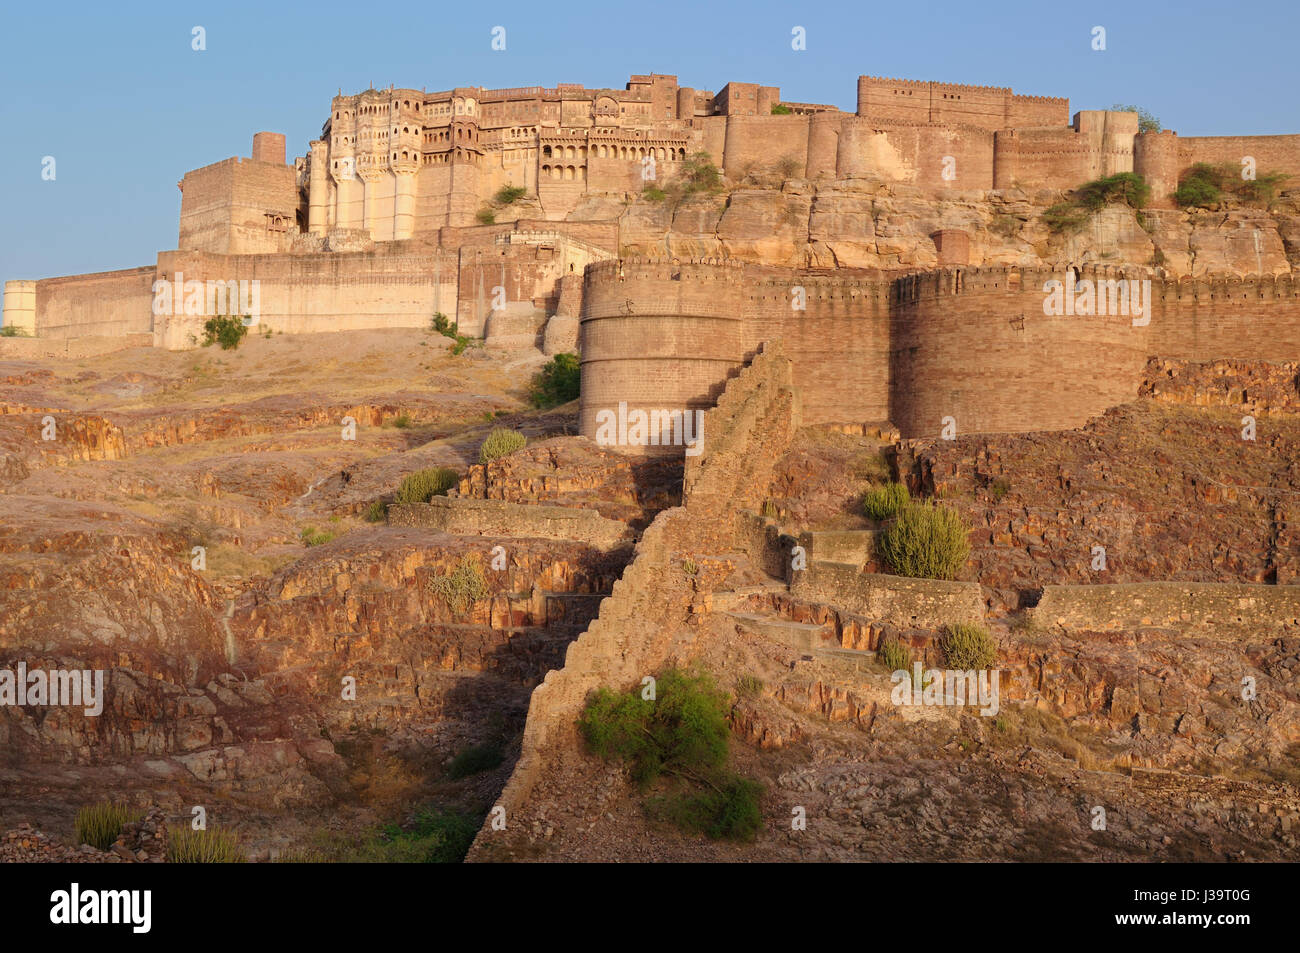 Fort majestueux maharaja de Jodphur sur la colline près de la ville de Jodphur en Inde. Rajasthan Banque D'Images